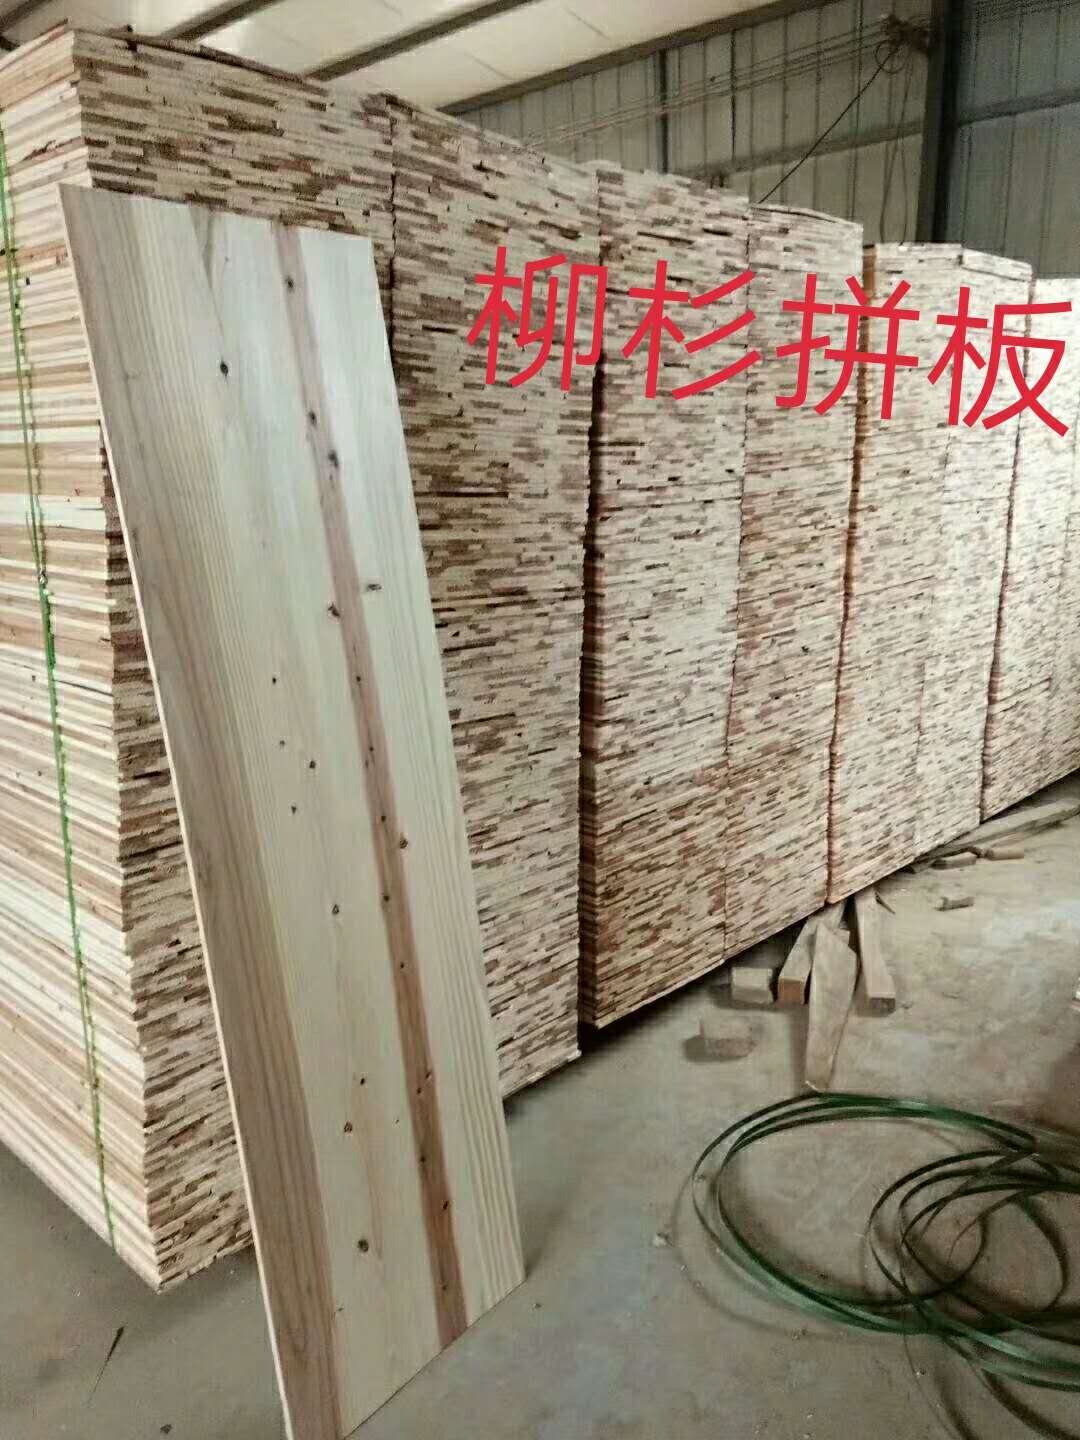 柳杉工艺品板厂家直销生产商批发报价表   柳杉工艺品板供应商公司价格图片